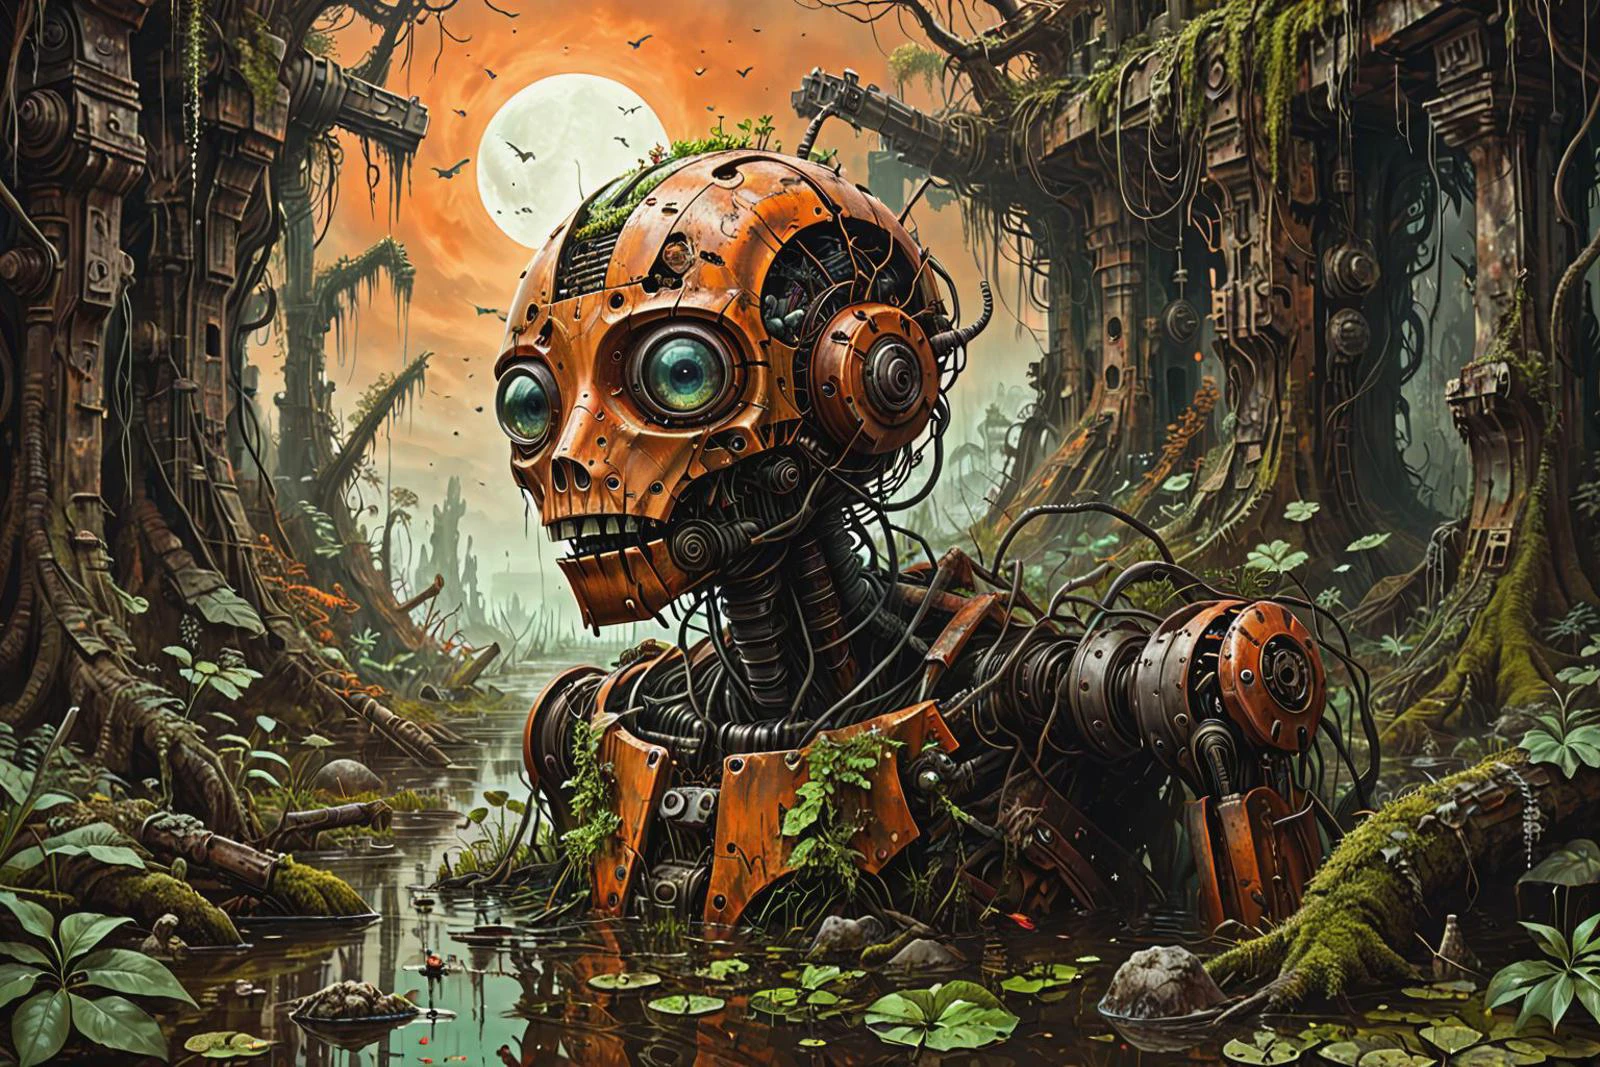 uma ilustração vívida de ficção científica de um robô de guerra fantástico, surreal, quebrado, enferrujado e coberto de vegetação, afogado em um pântano, armas destruídas, maquinaria, moss, folhas, árvores, selva, céu laranja escuro,
 ilusão esquerda